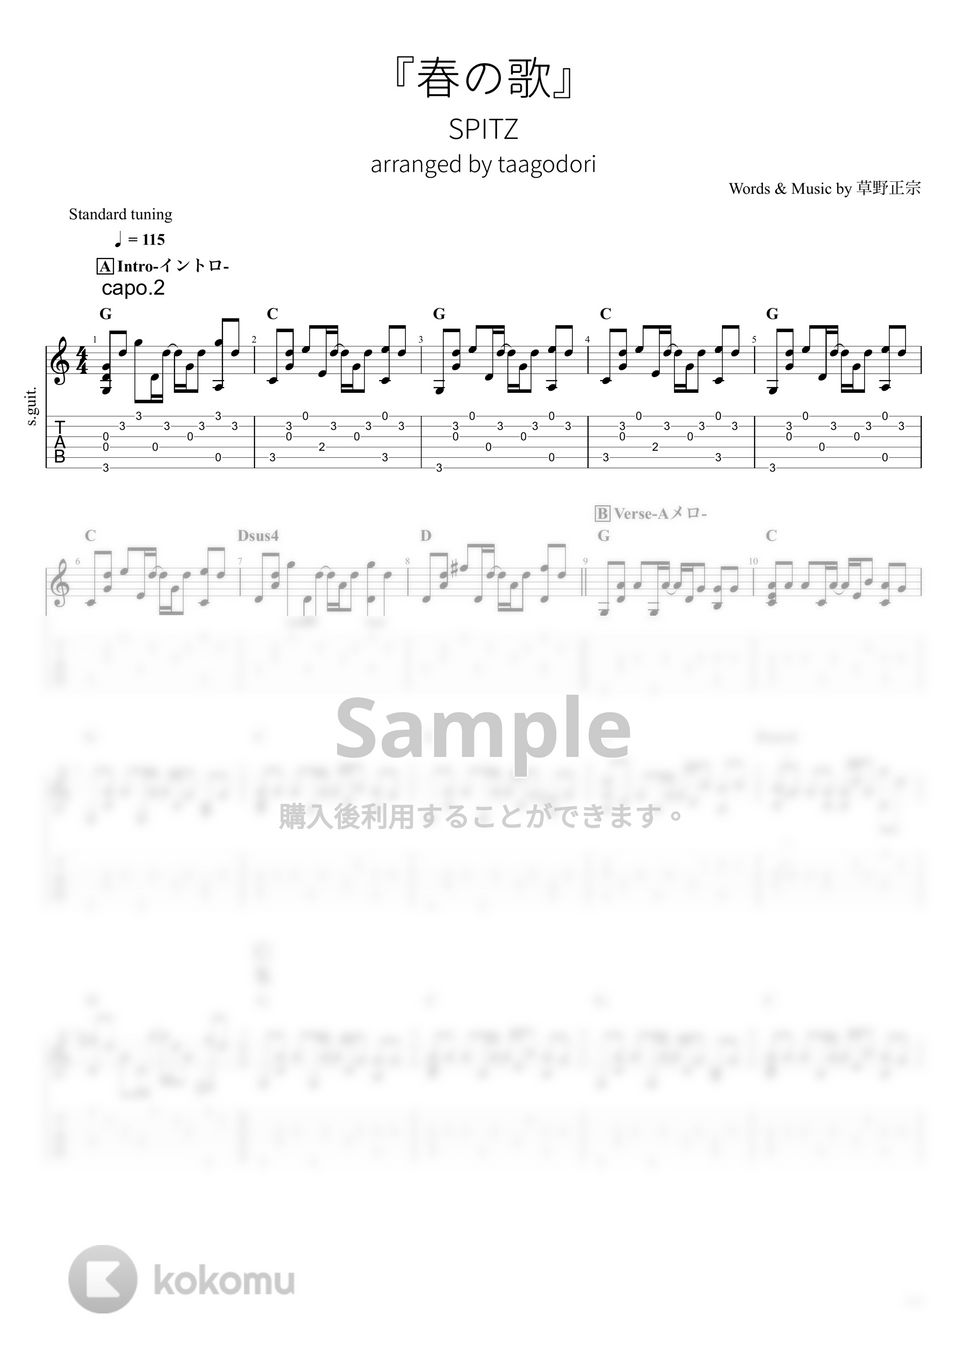 スピッツ - 春の歌 (ソロギター) by たまごどり